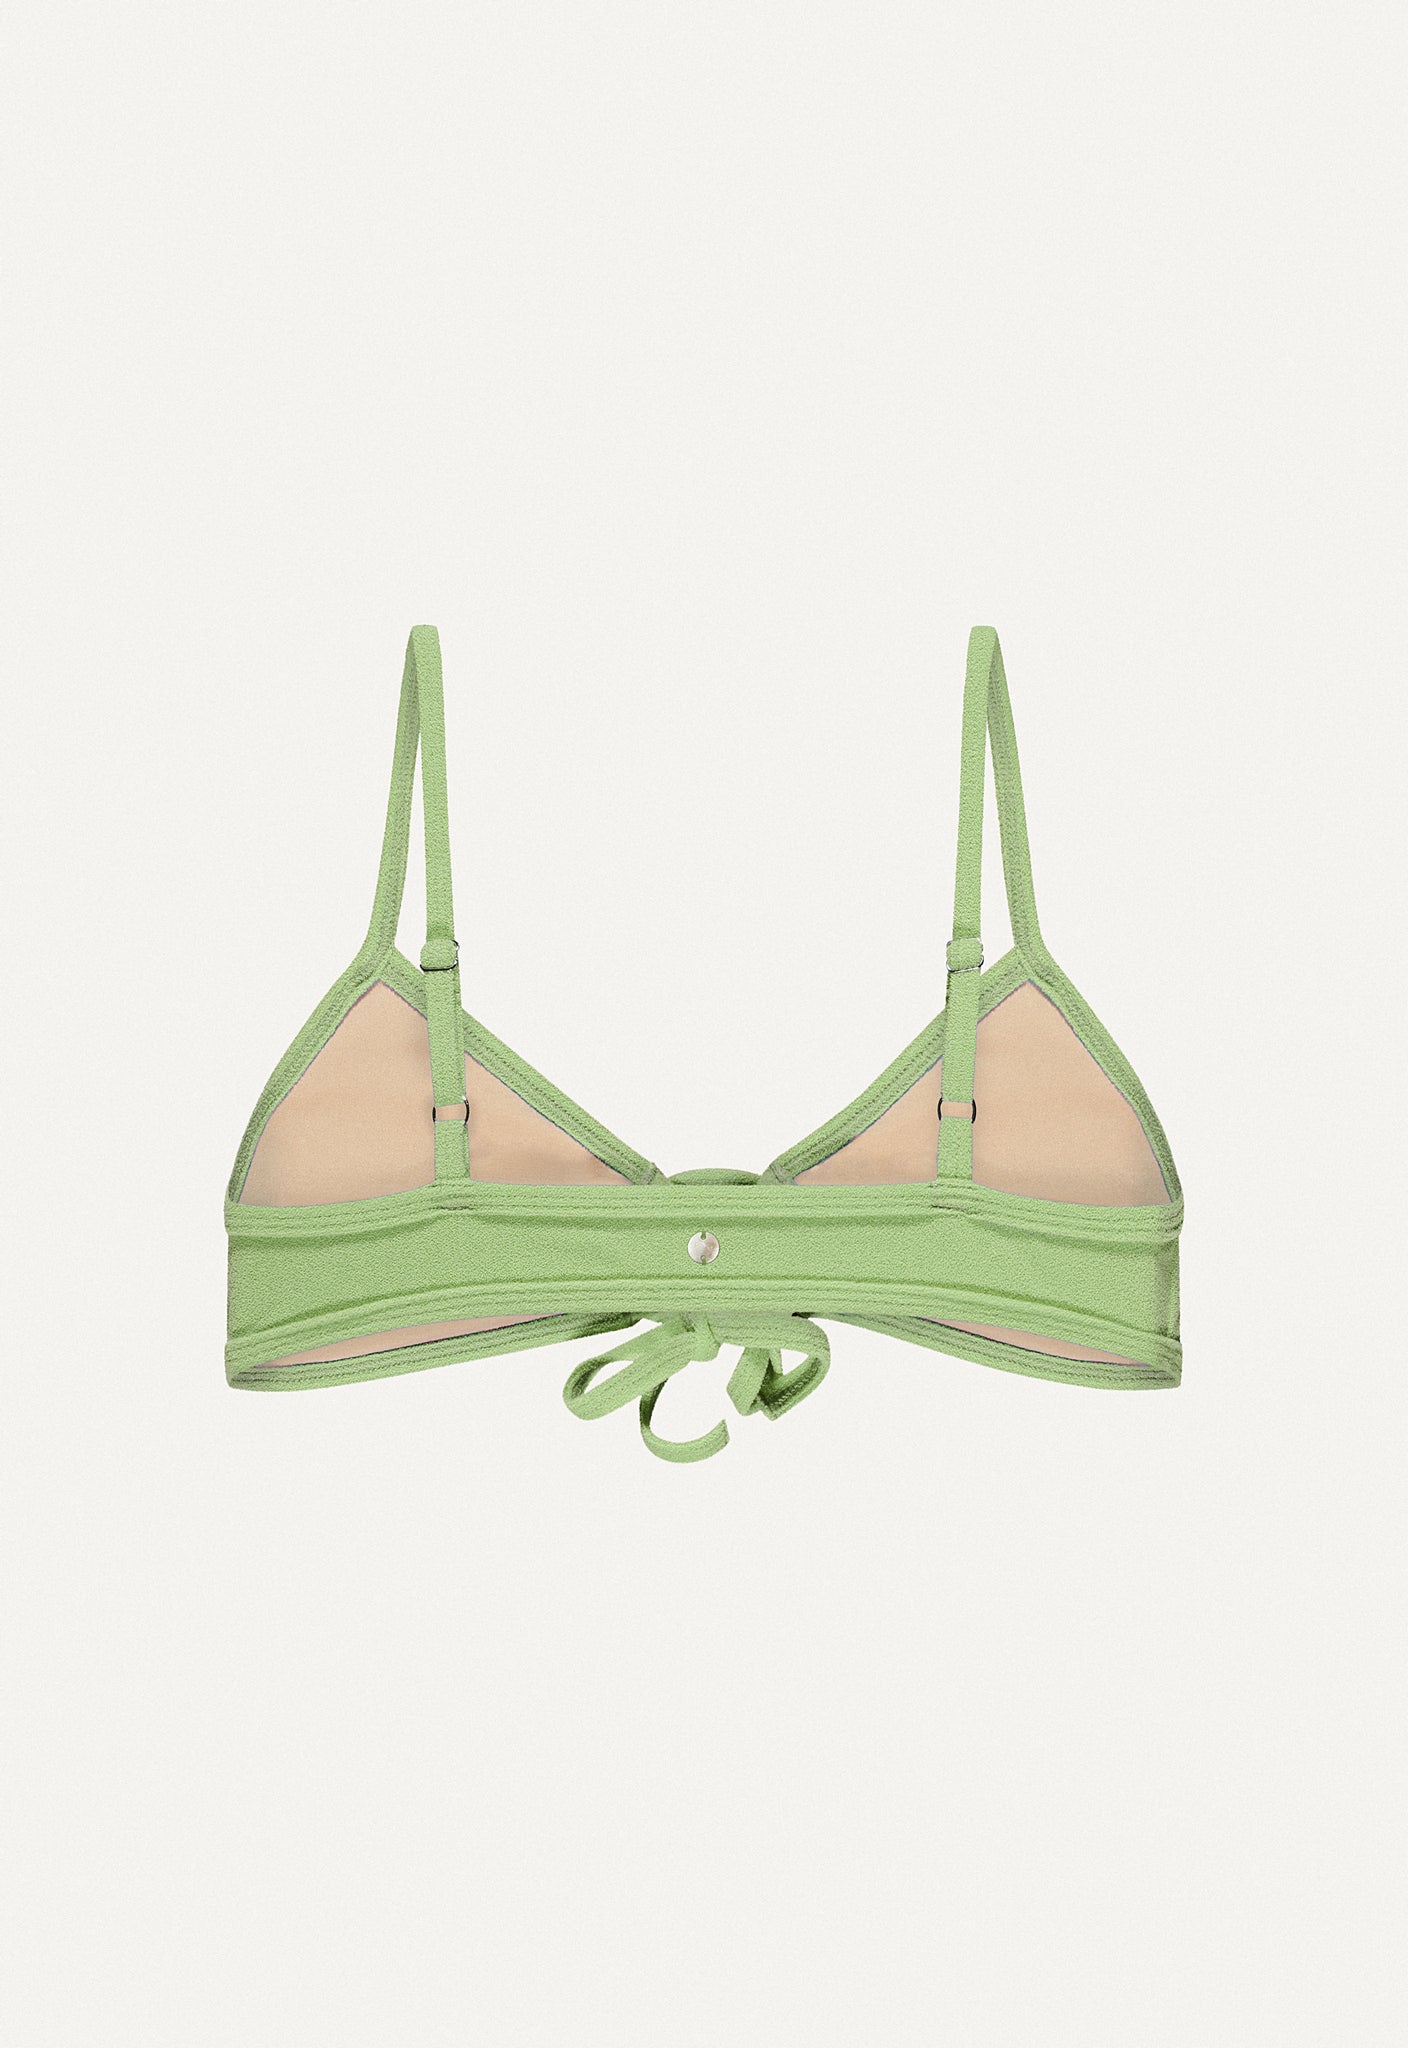 Bikini Top "Joran" in linden green terry